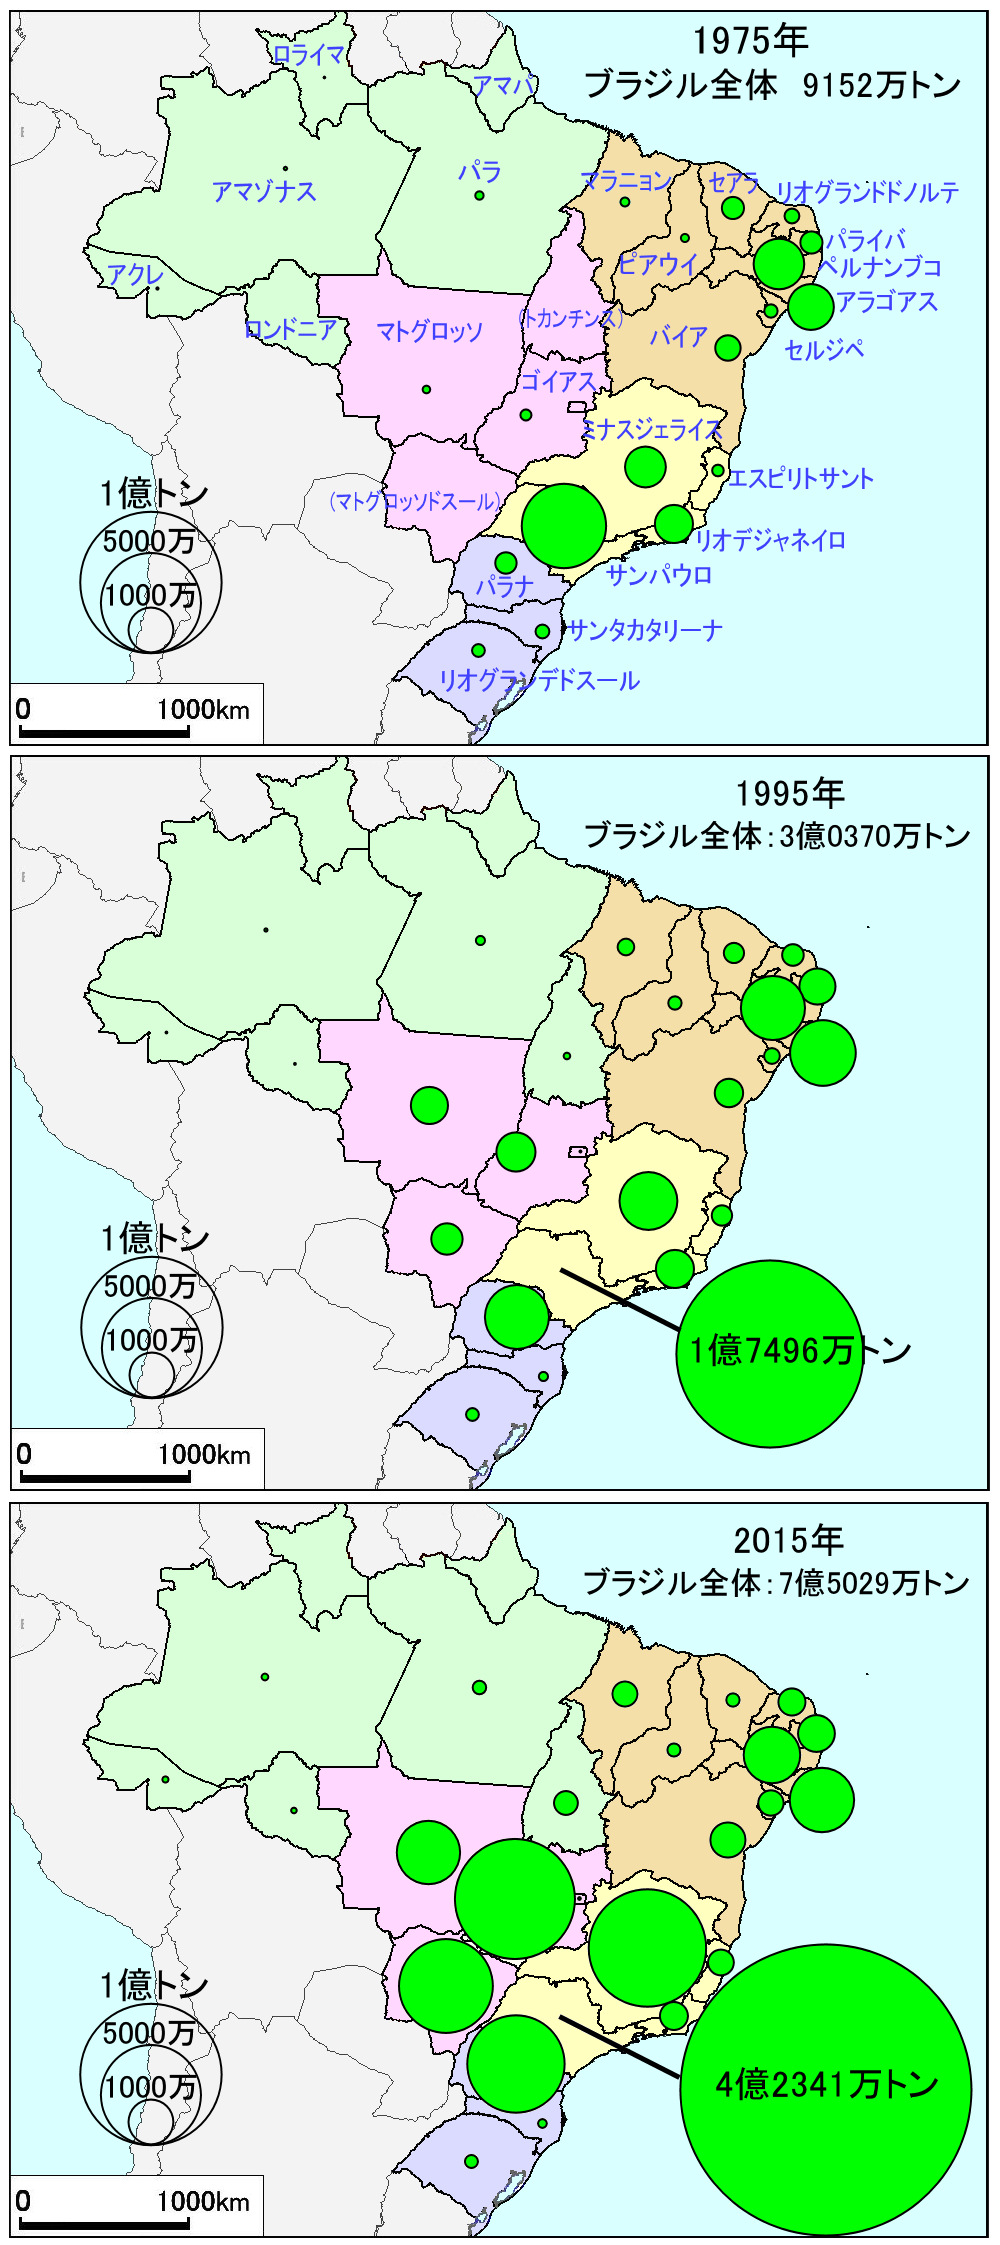 Sugarcane production of Brazilian states